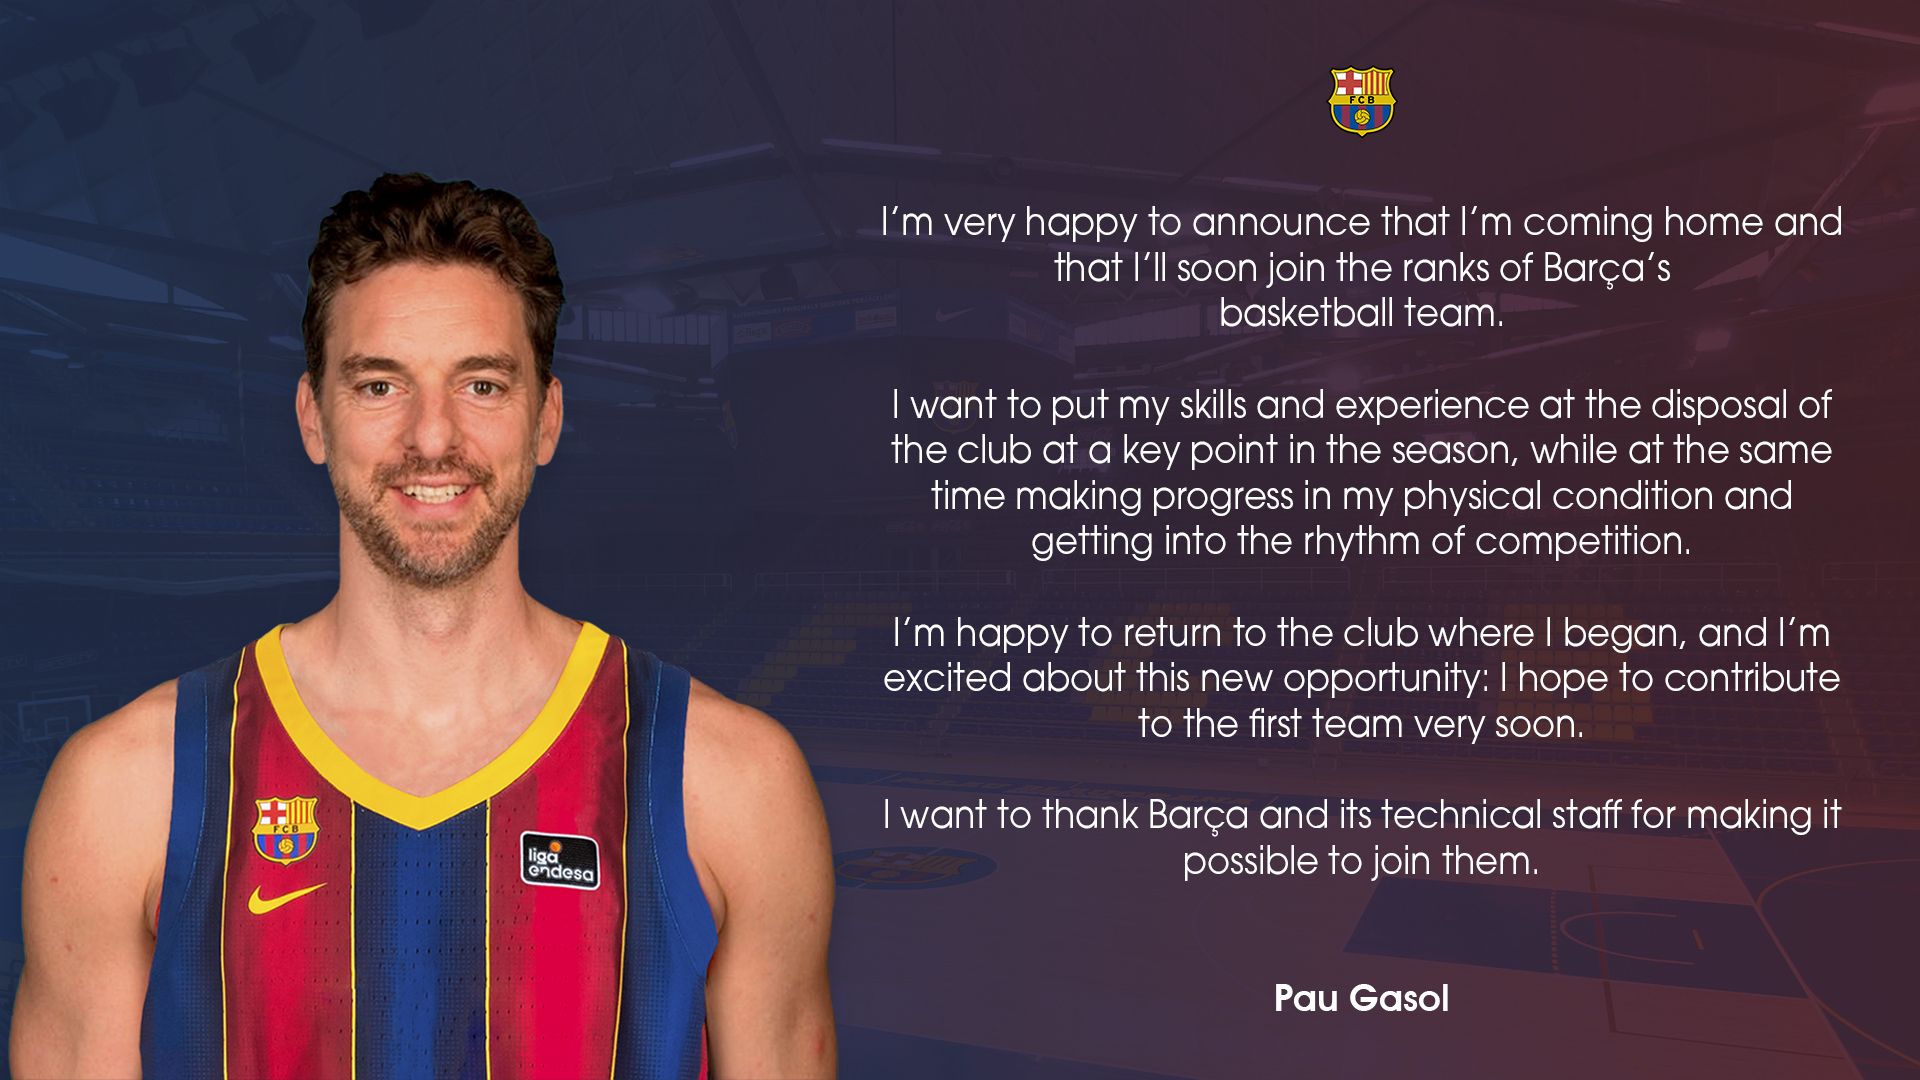 Pau Gasol happy to come back home.⠀⠀⠀⠀⠀⠀⠀⠀⠀⠀⠀⠀⠀⠀⠀⠀⠀⠀ Força Barça!